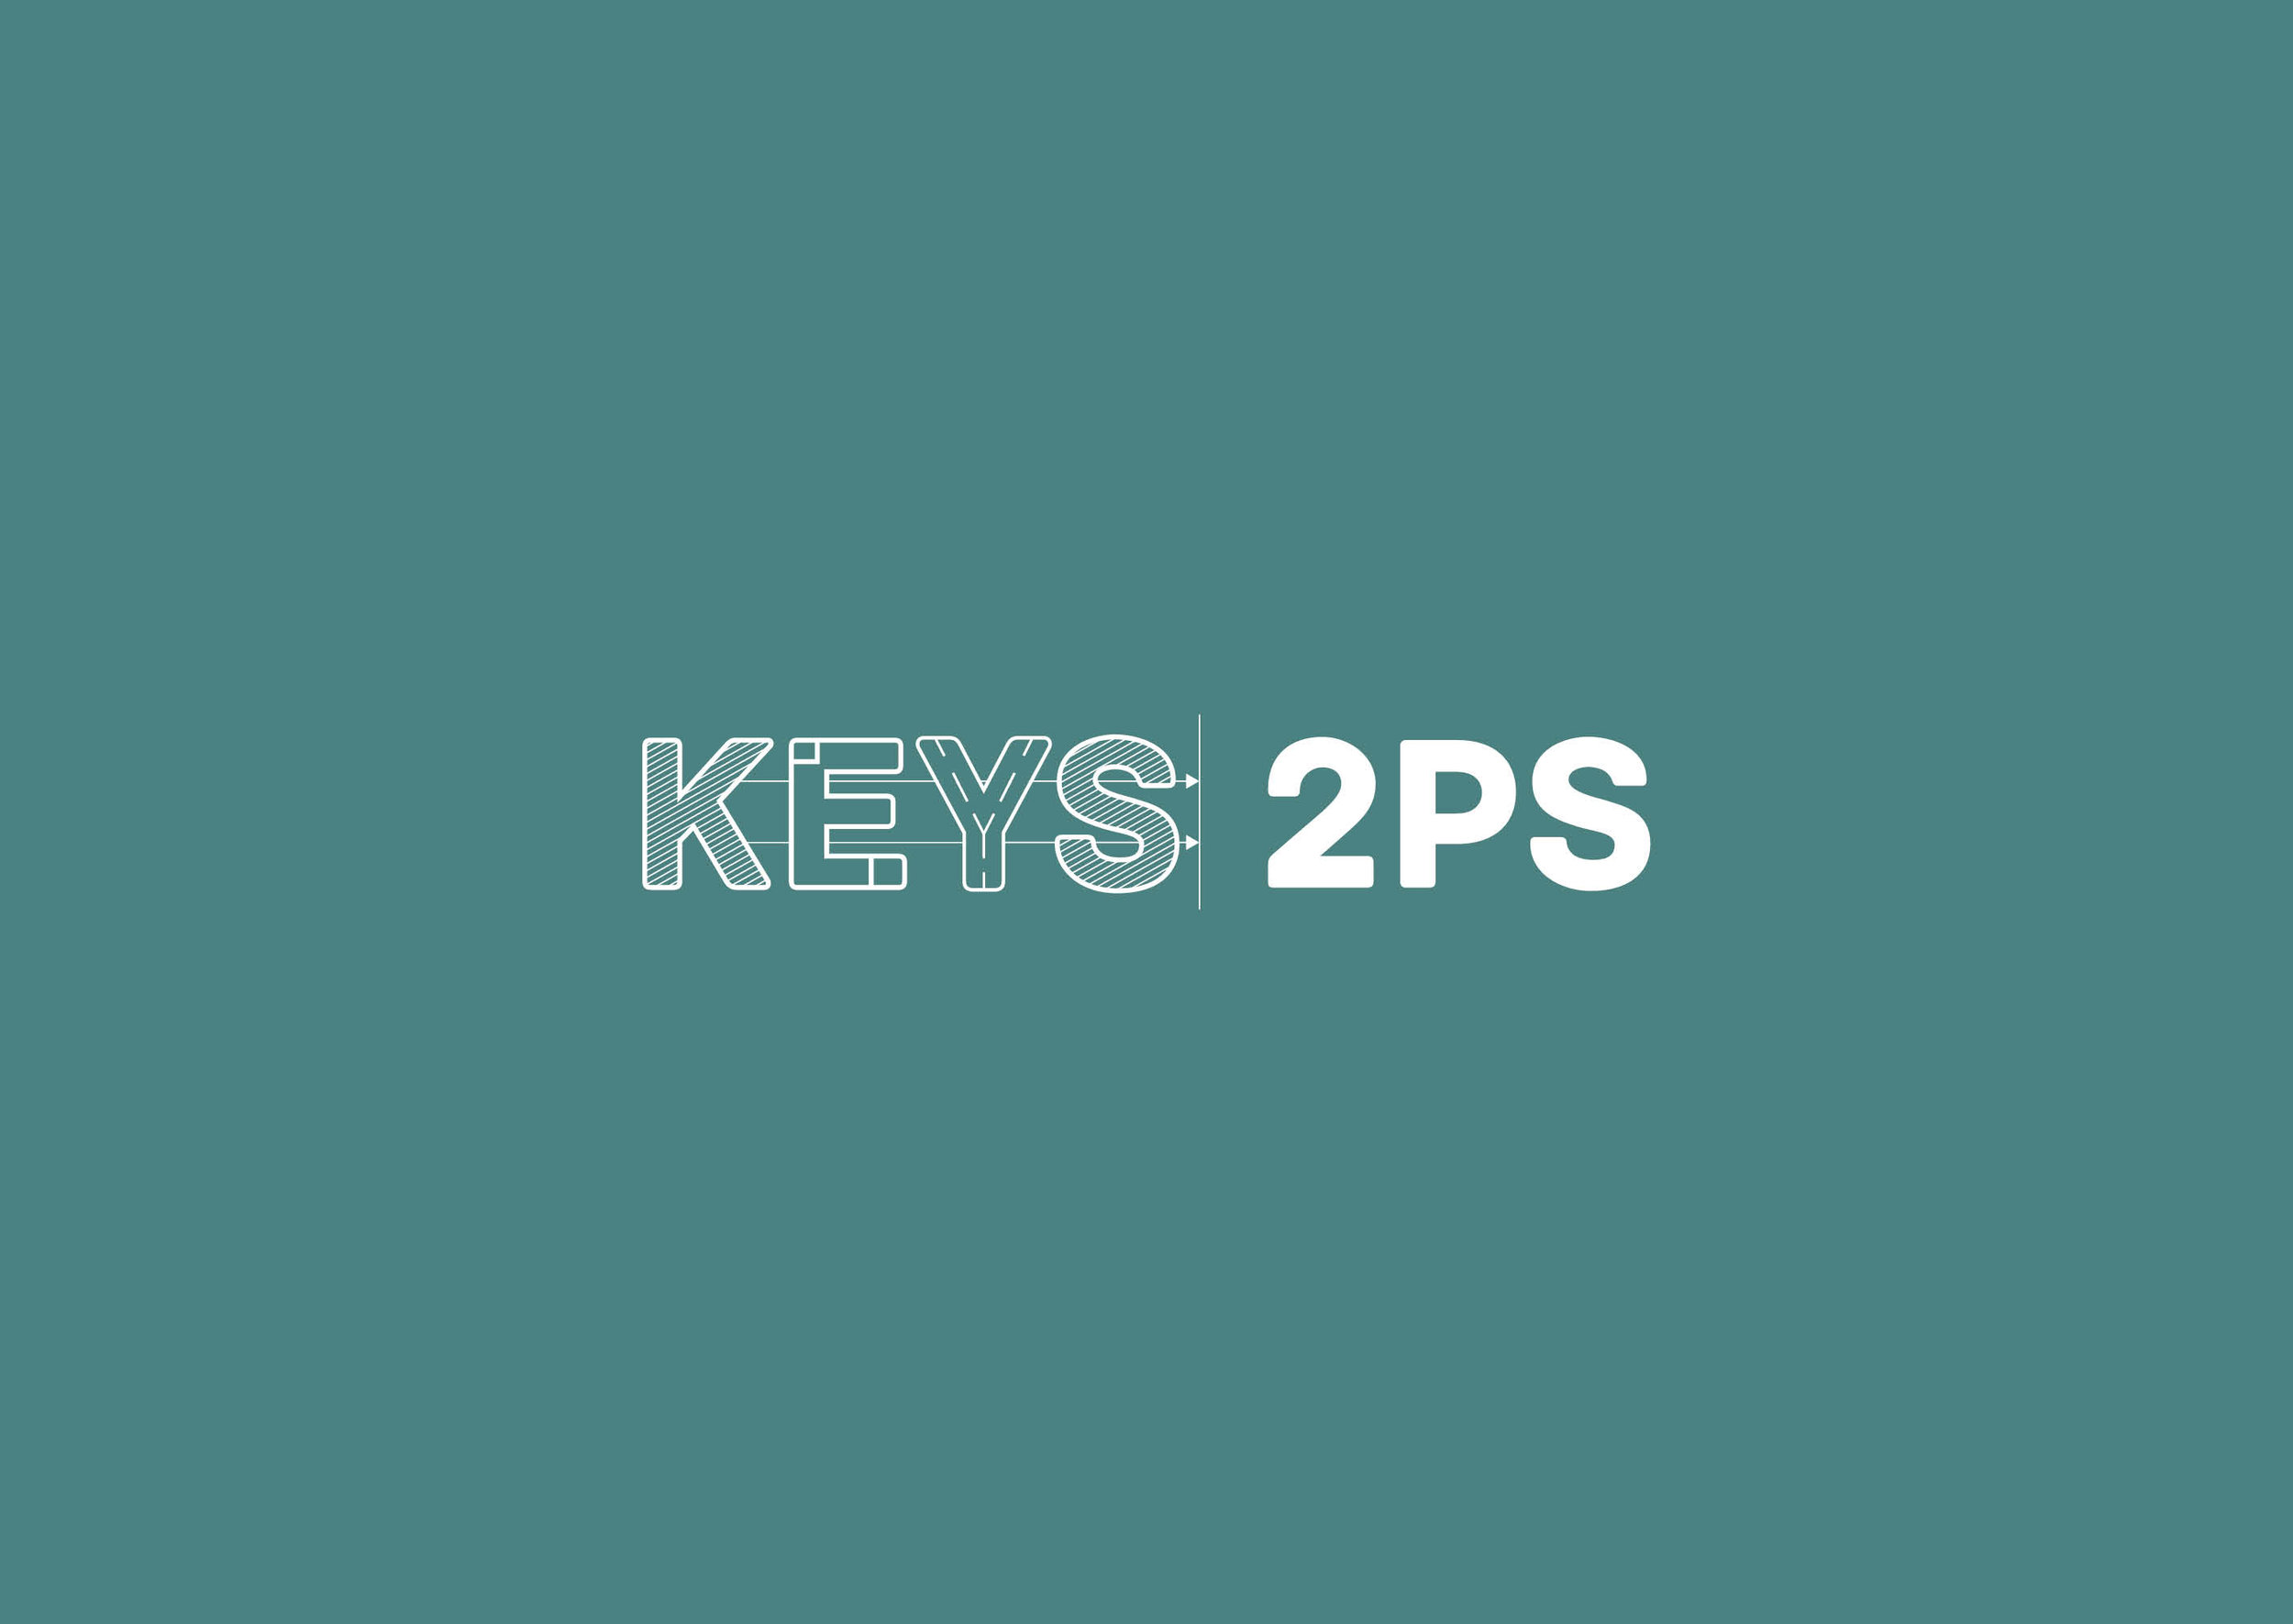 KEYS2PS_LogoOptions.jpg